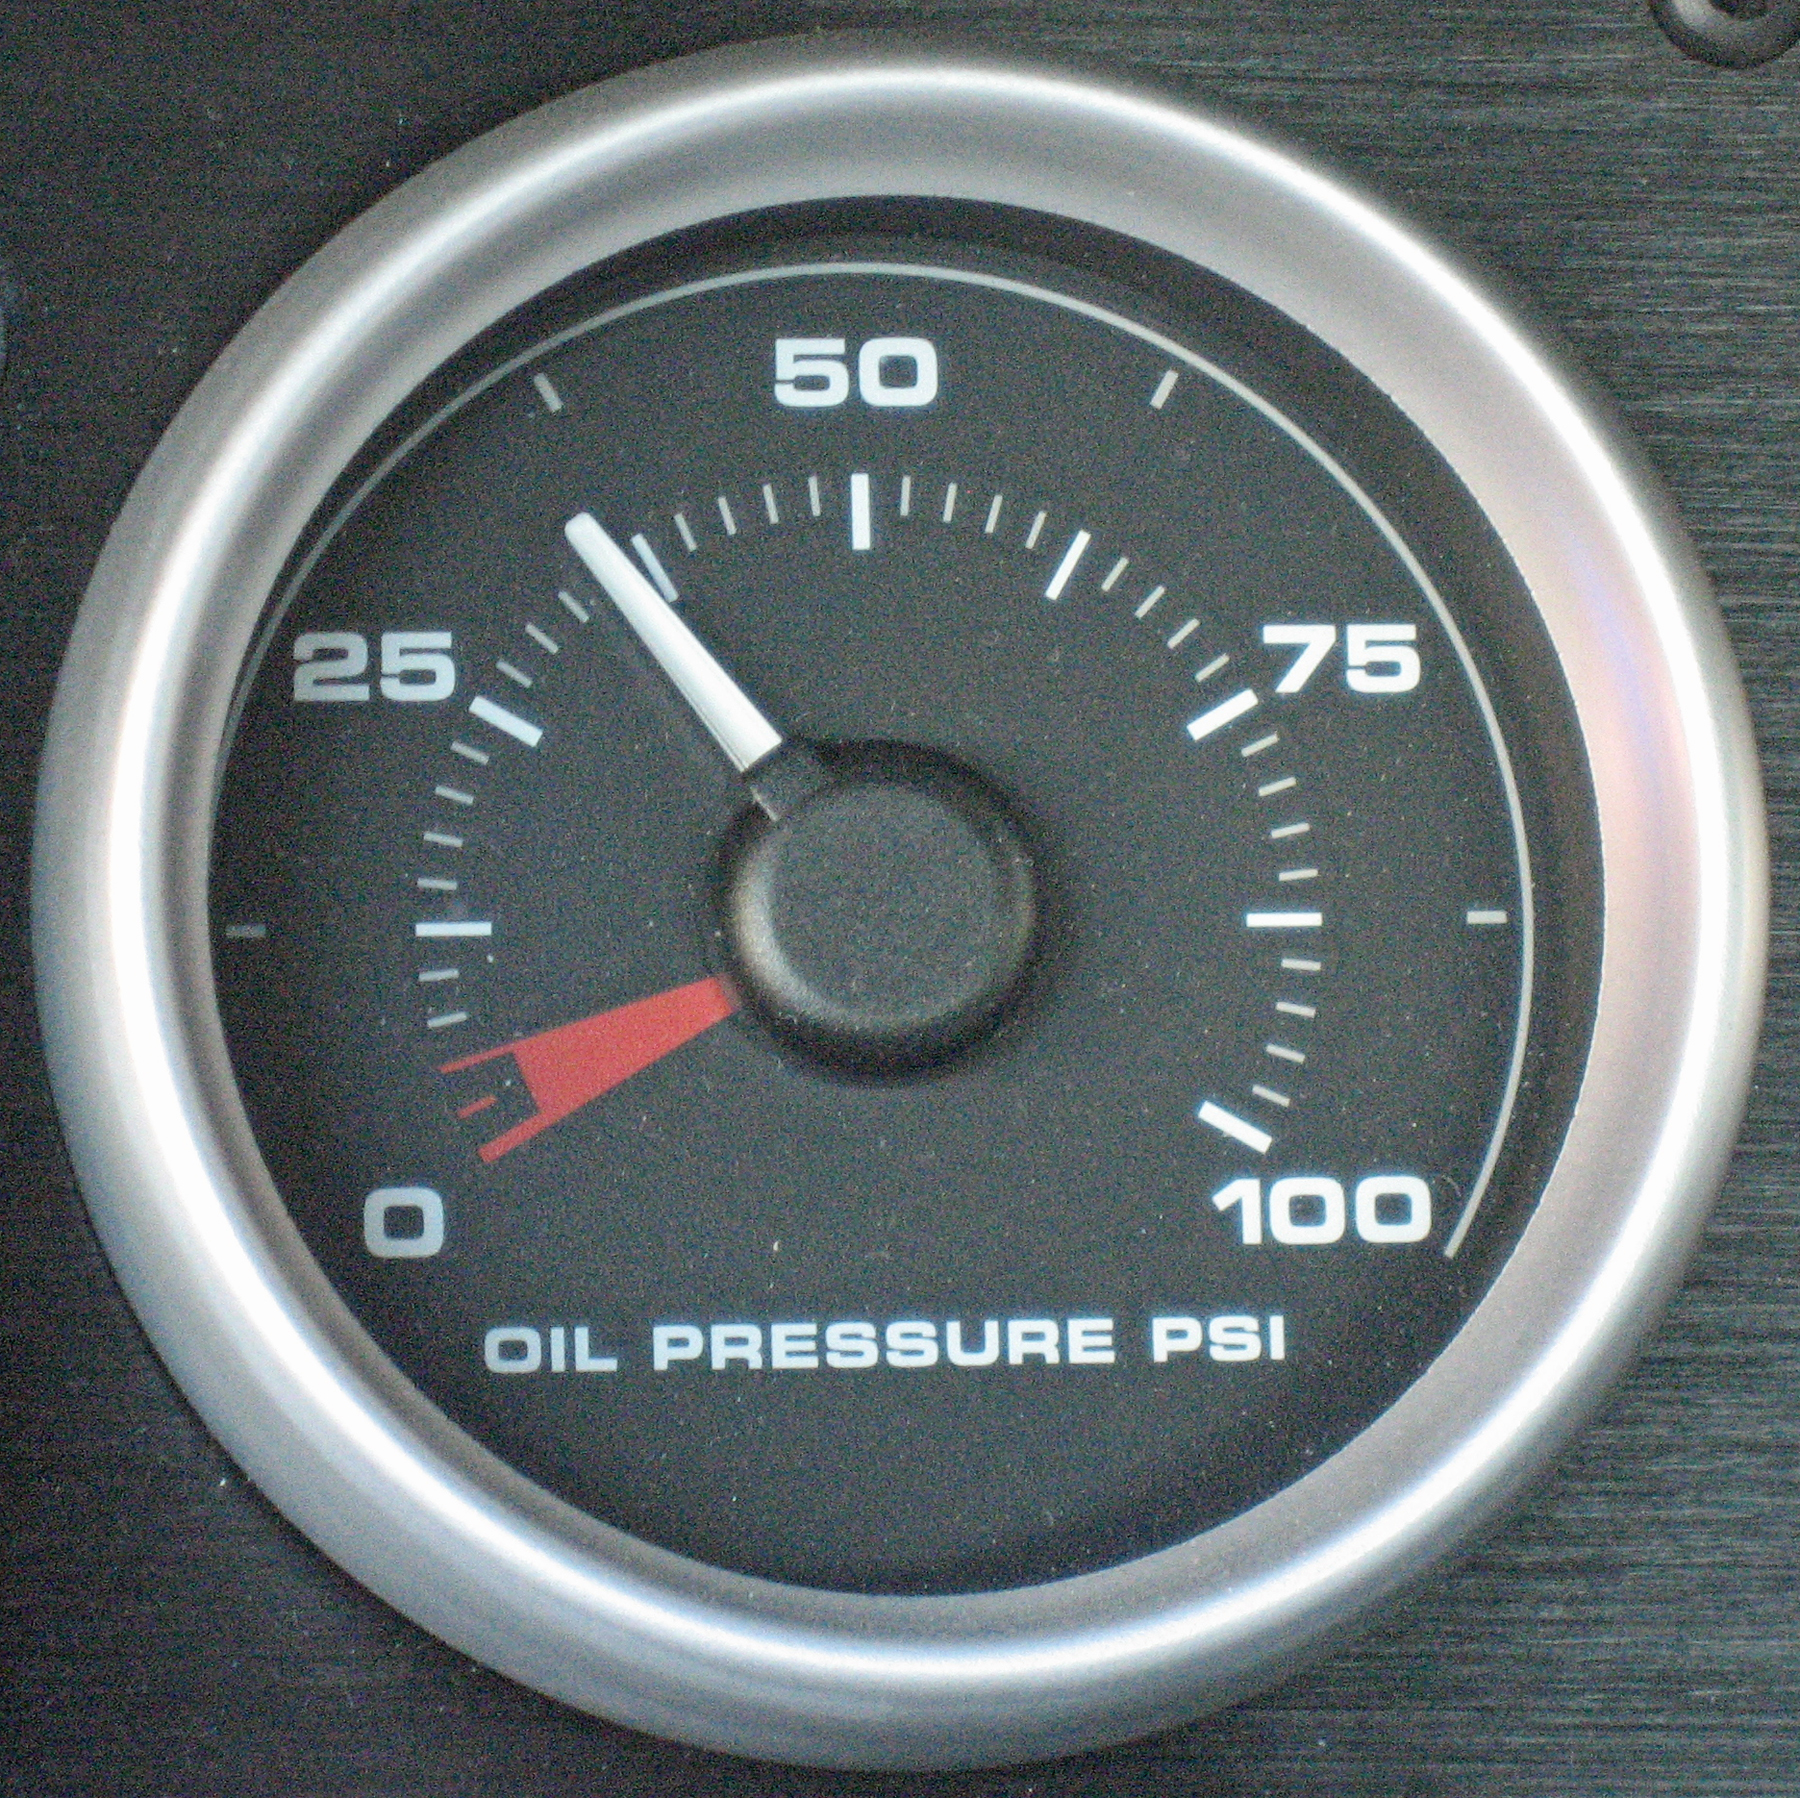 2005 Ford GT Long Term Oil Pressure Gauge